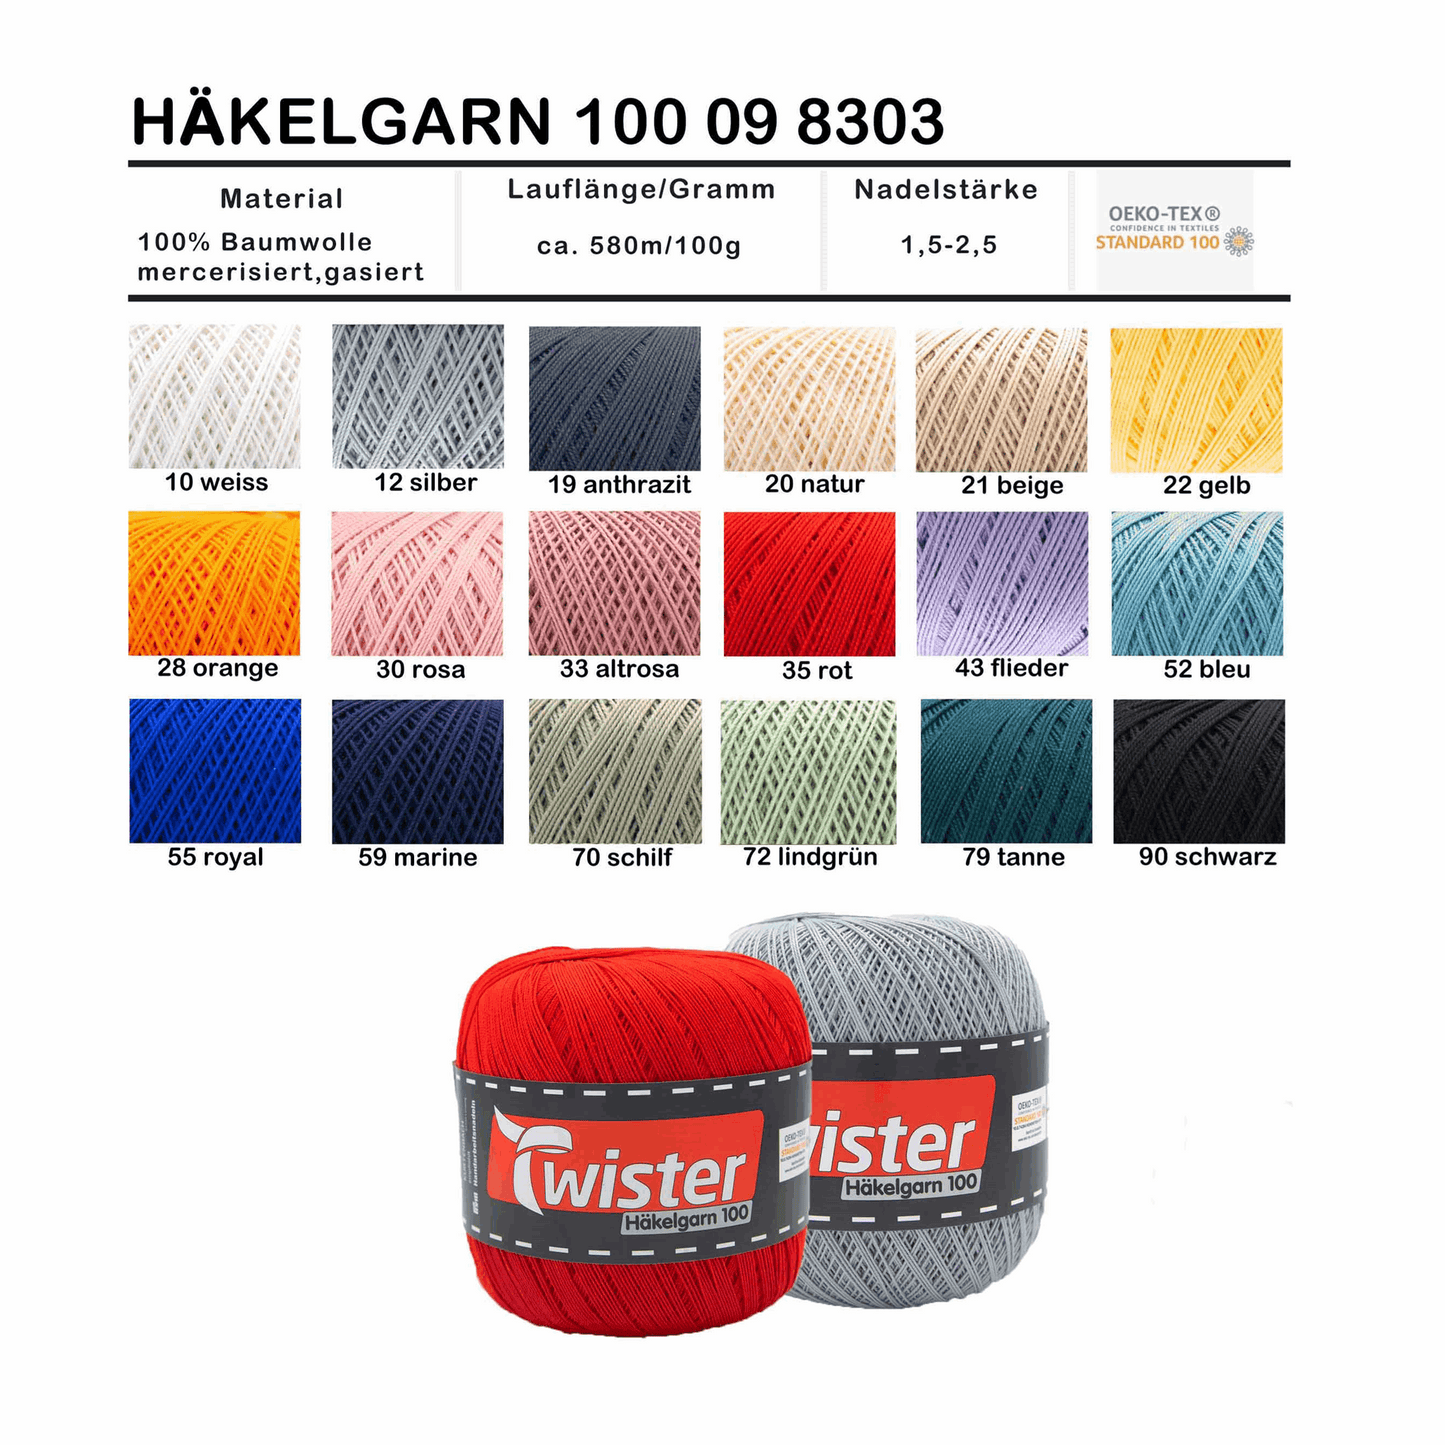 Twister Häkelgarn, 100g, 98303, Farbe weiß 10